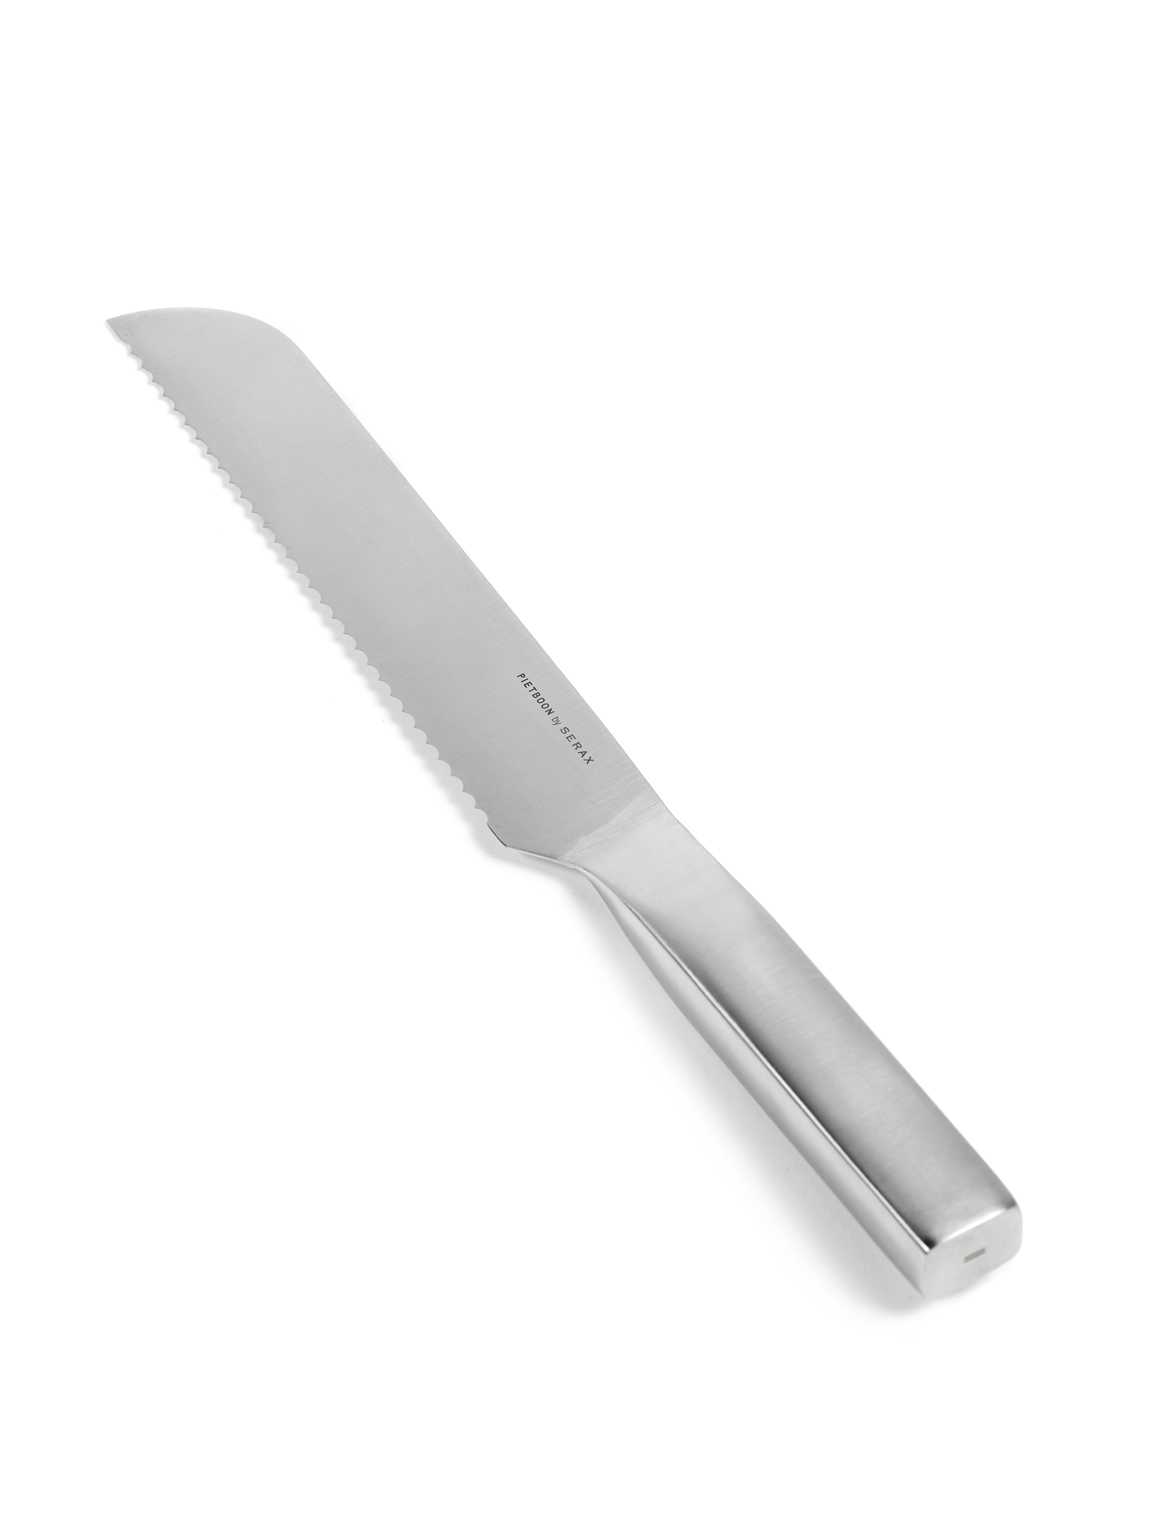 BASE - bread knife